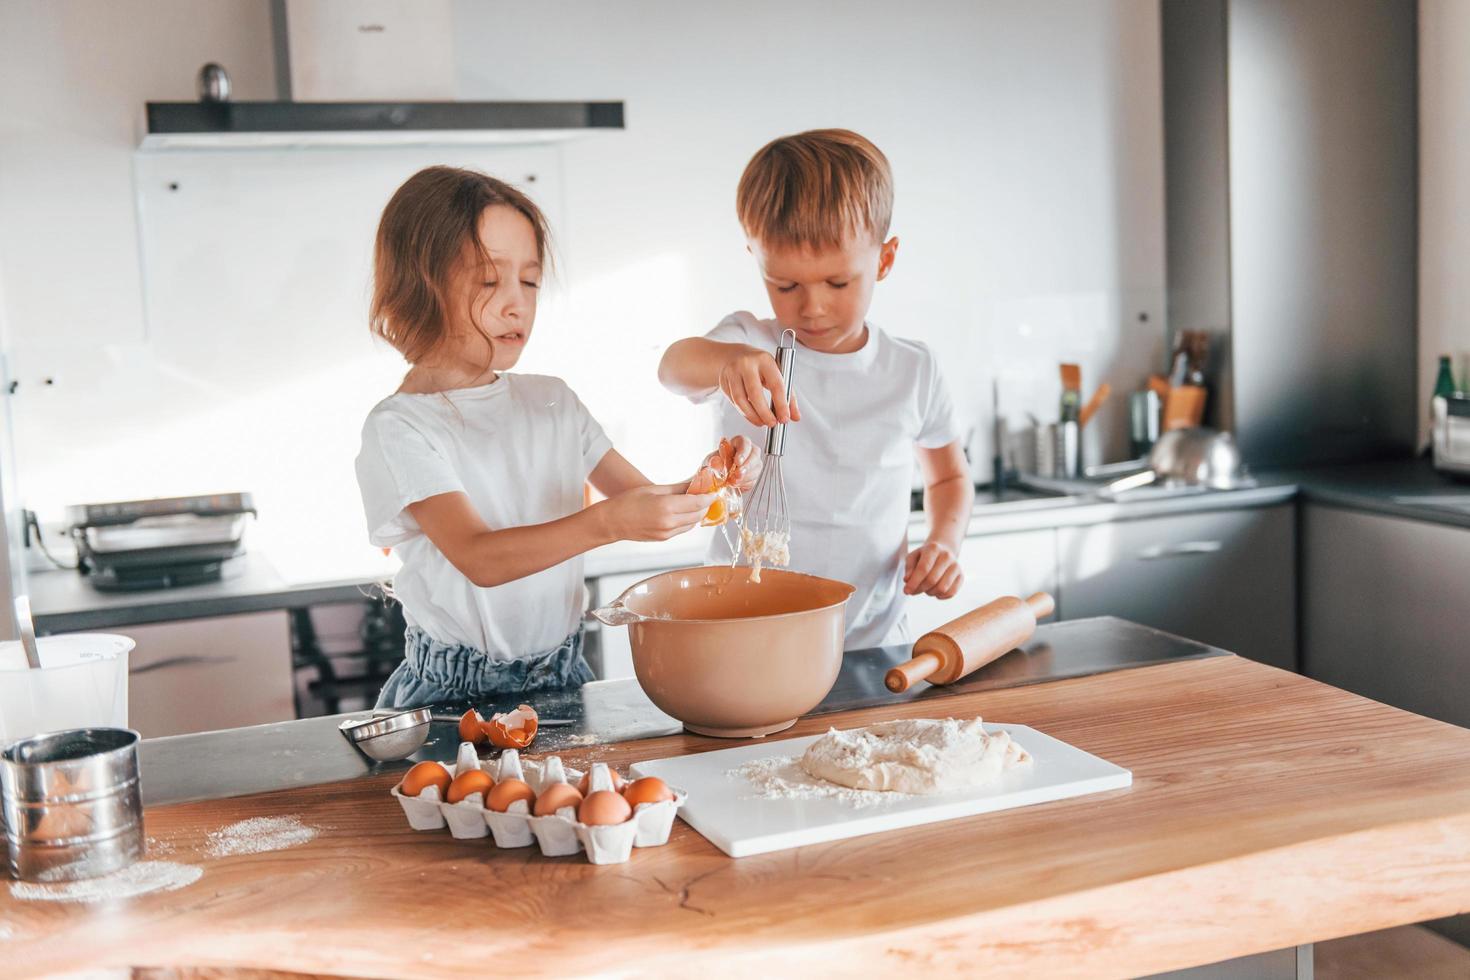 trabalhando com massa. menino e menina preparando biscoitos de natal na cozinha foto